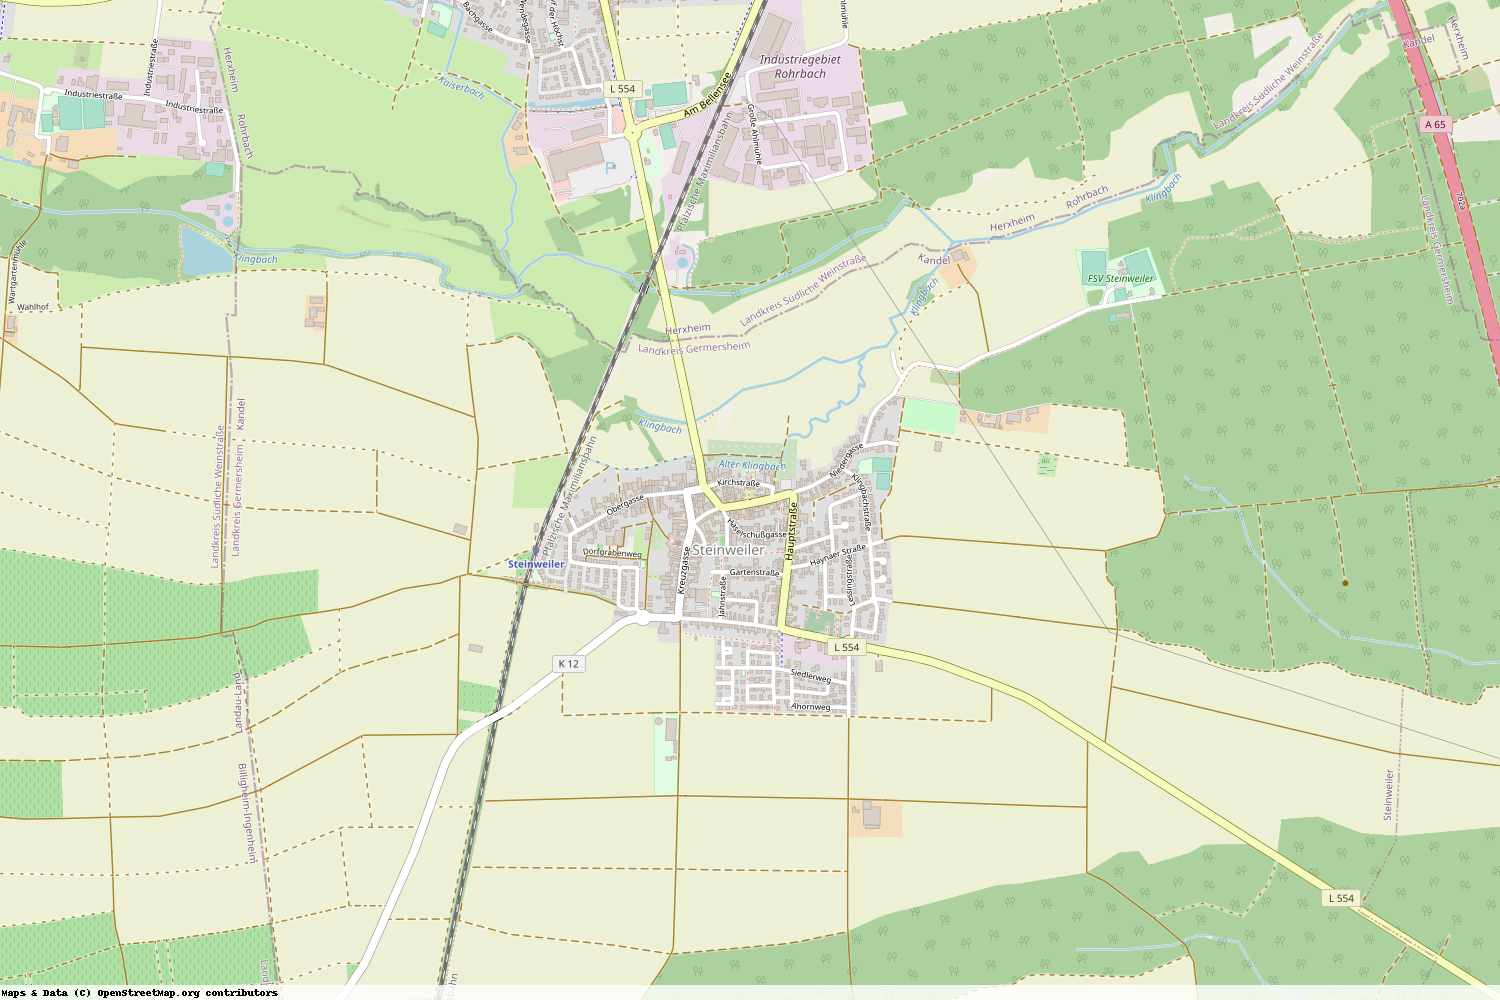 Ist gerade Stromausfall in Rheinland-Pfalz - Germersheim - Steinweiler?